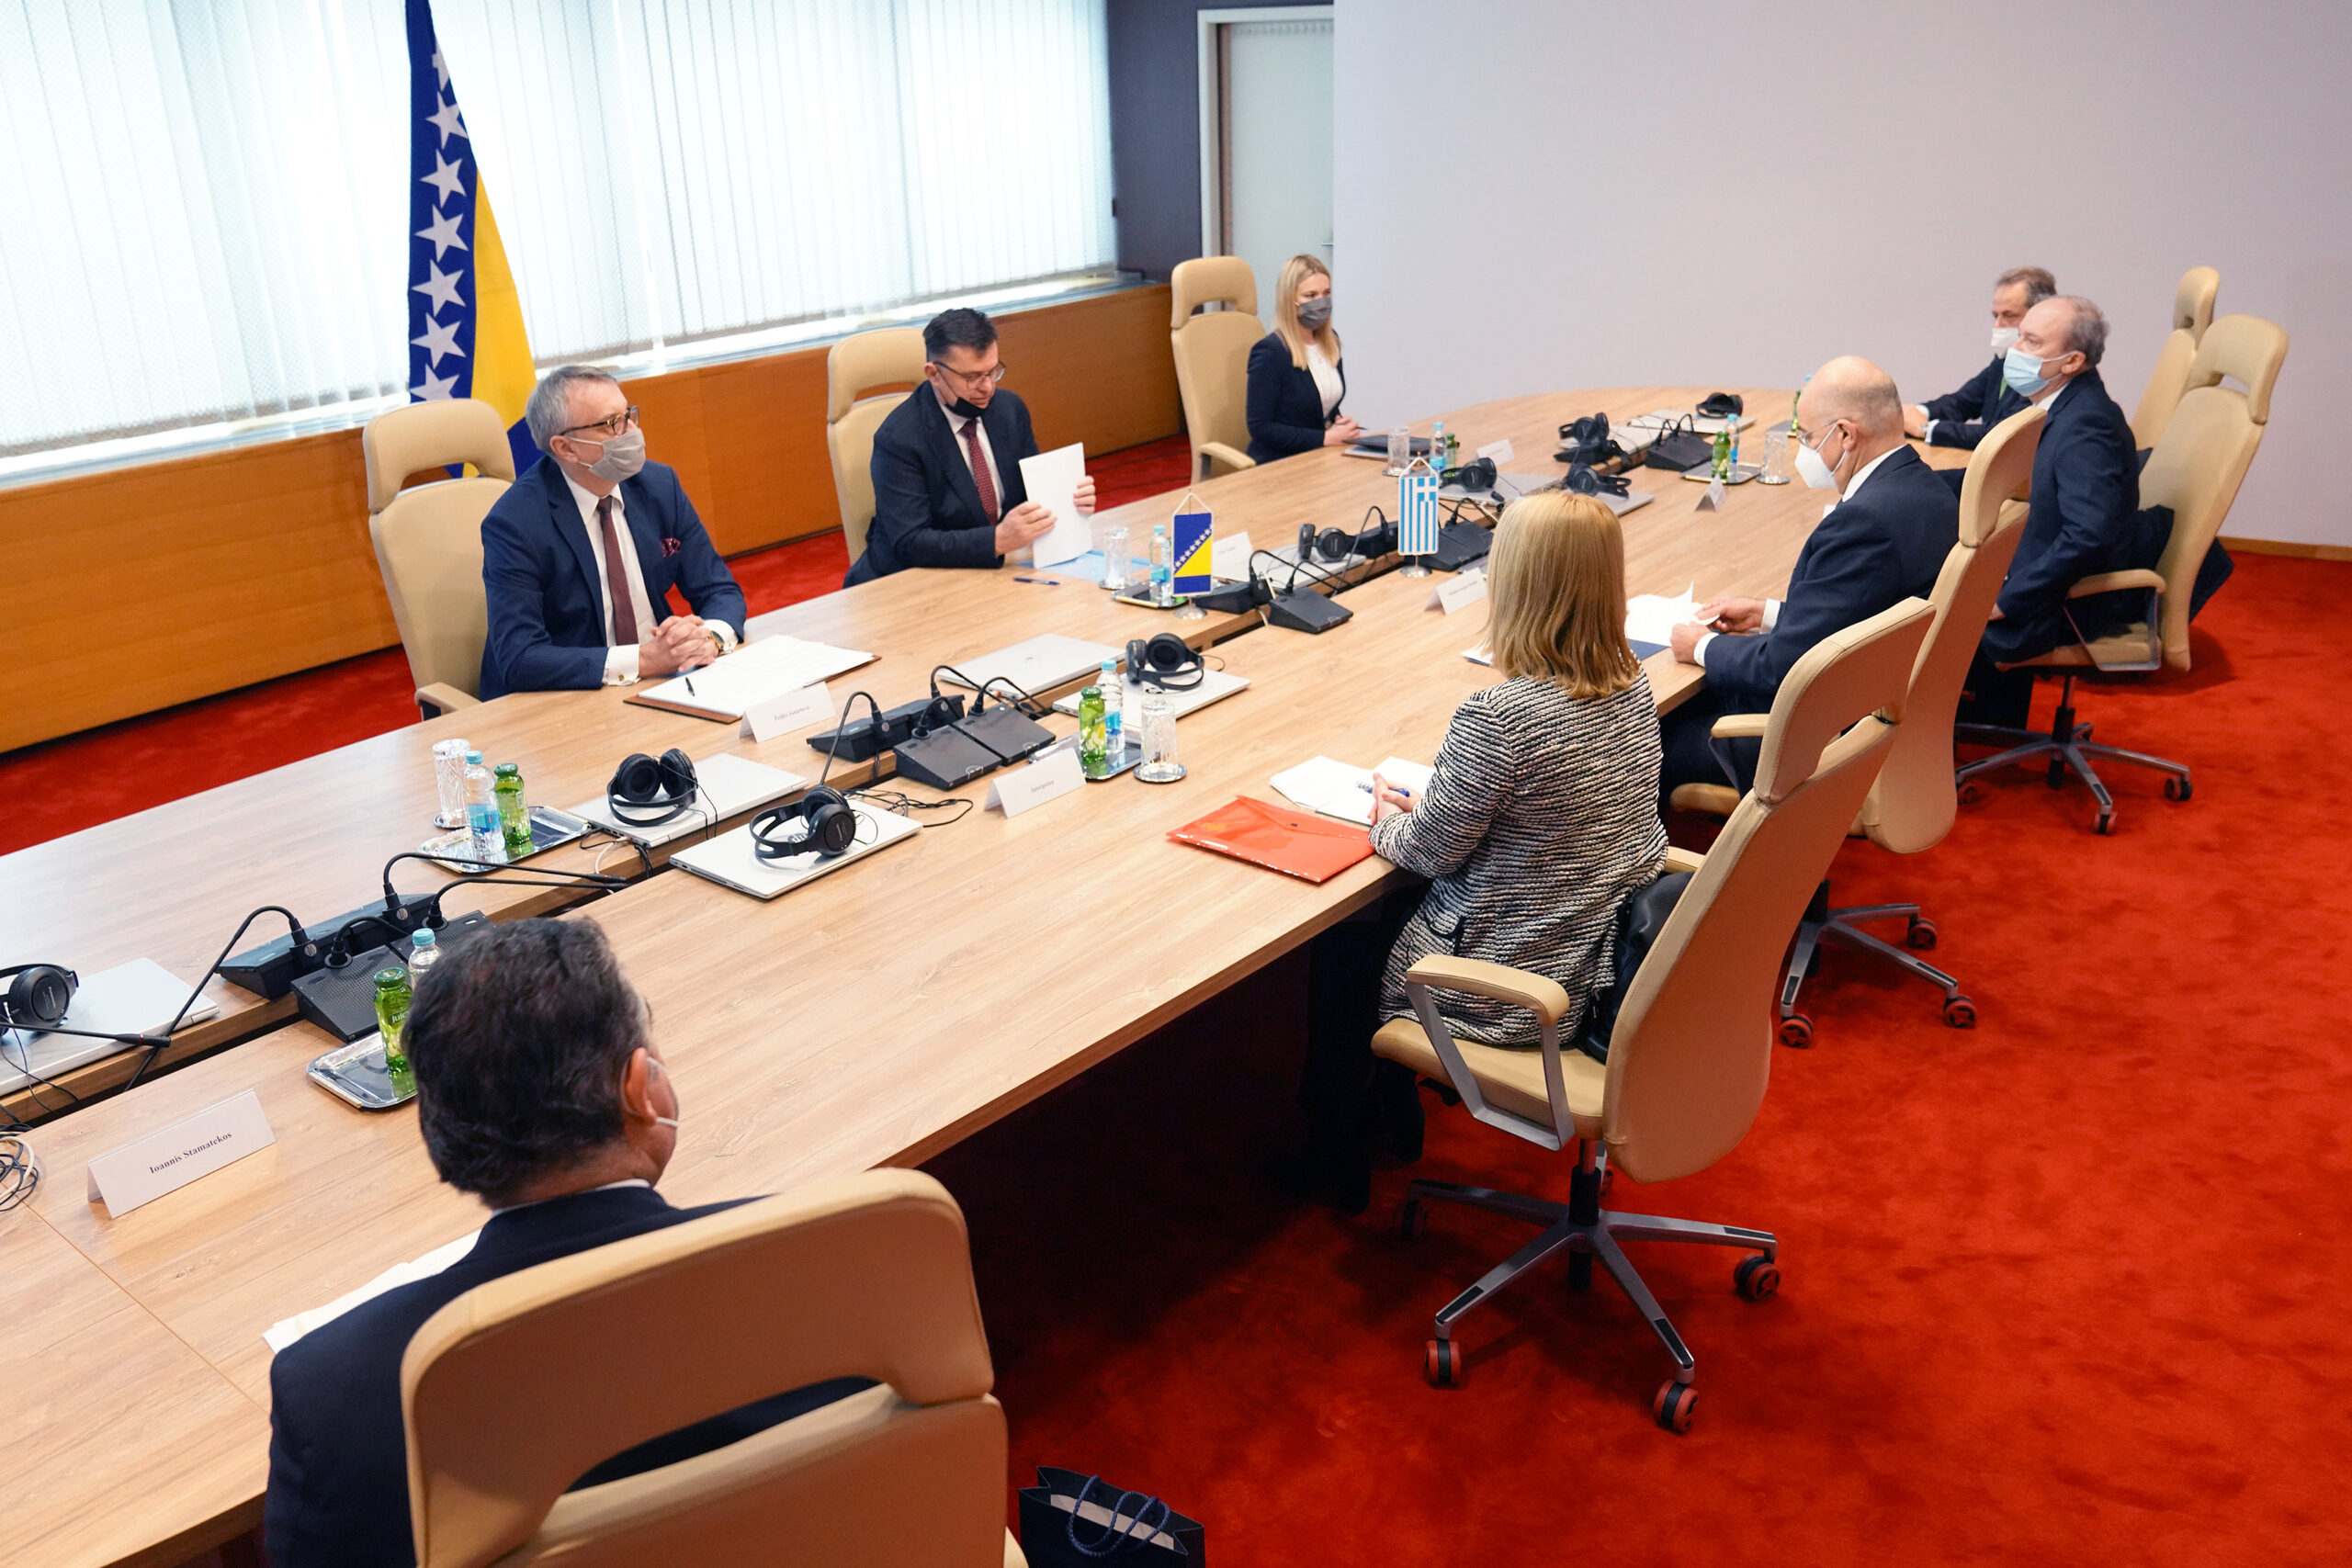 Επίσκεψη Υπουργού Εξωτερικών, Νίκου Δένδια, στη Βοσνία και Ερζεγοβίνη. Συναντήθηκε στο Σεράγεβο με τον Πρόεδρο του Συμβουλίου Υπουργών της Βοσνίας και Ερζεγοβίνης, κ. Zoran Tegeltija ( Σαράγεβο, 29.01.2021)